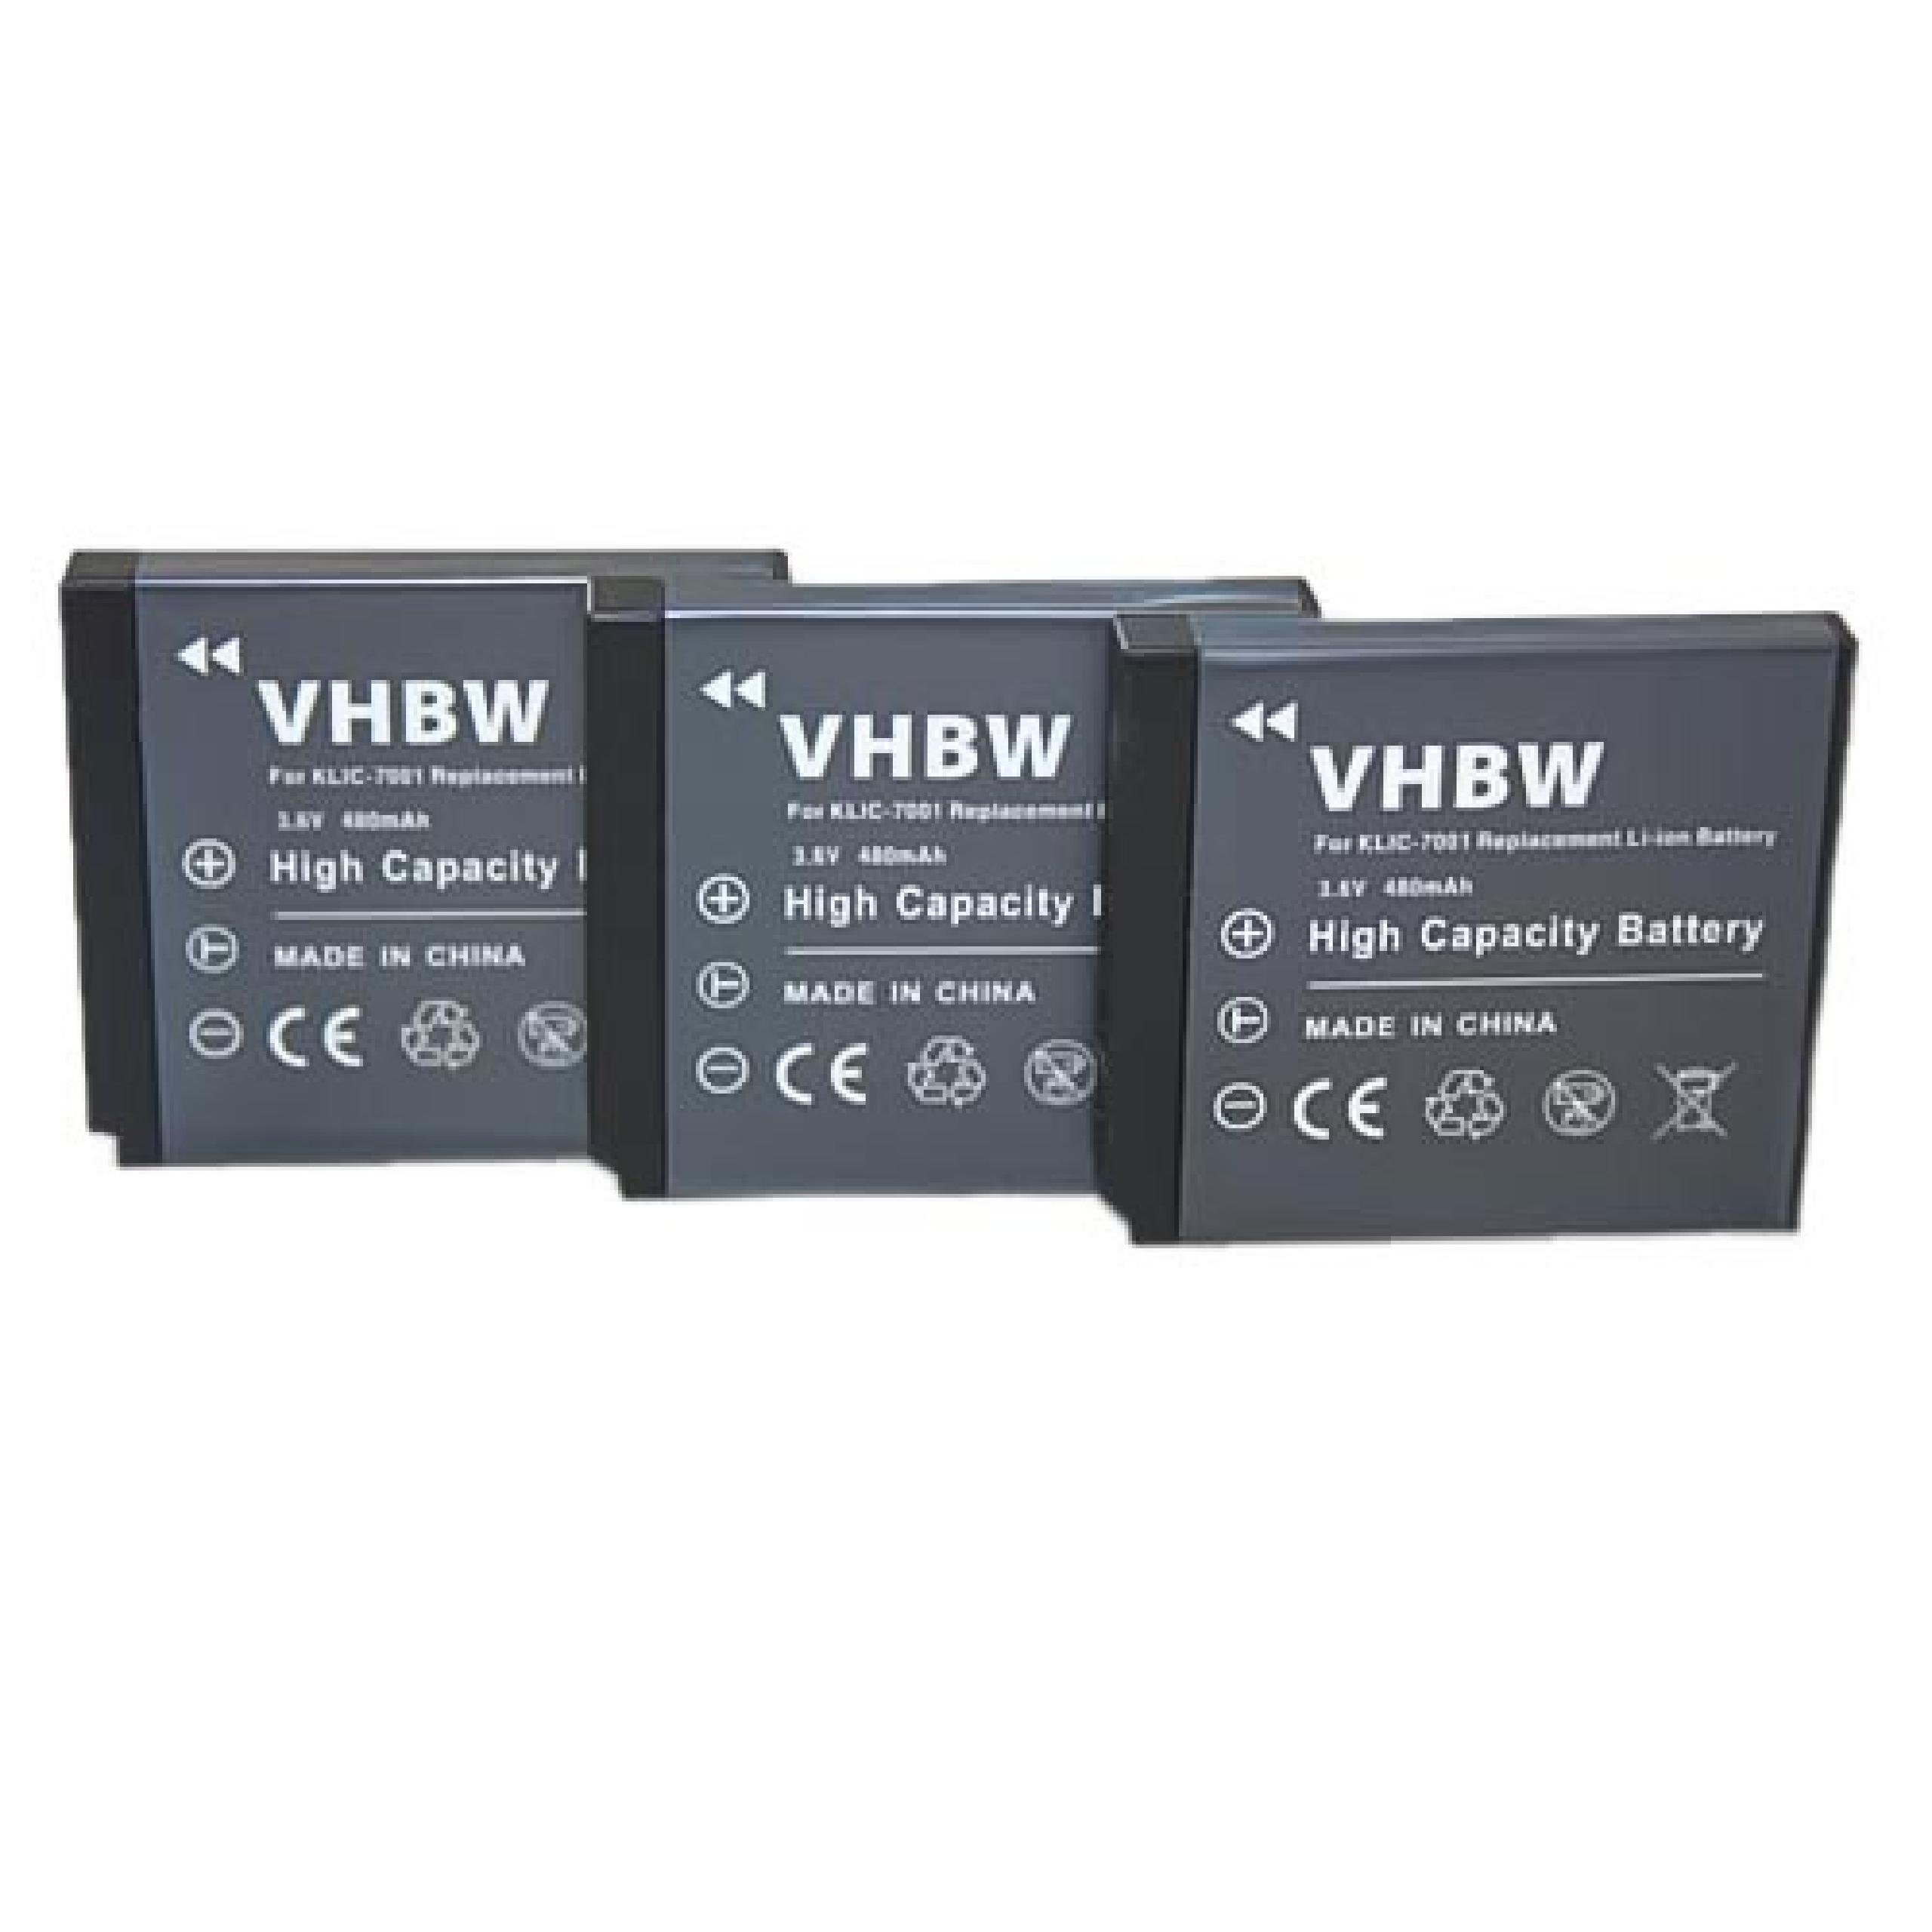 vhbw passend DXG-5C0, DXG-5C0V, Kamera-Akku Rollei für DXG 5C8VR, 480 DXG-599V, mAh DXG-5C8V